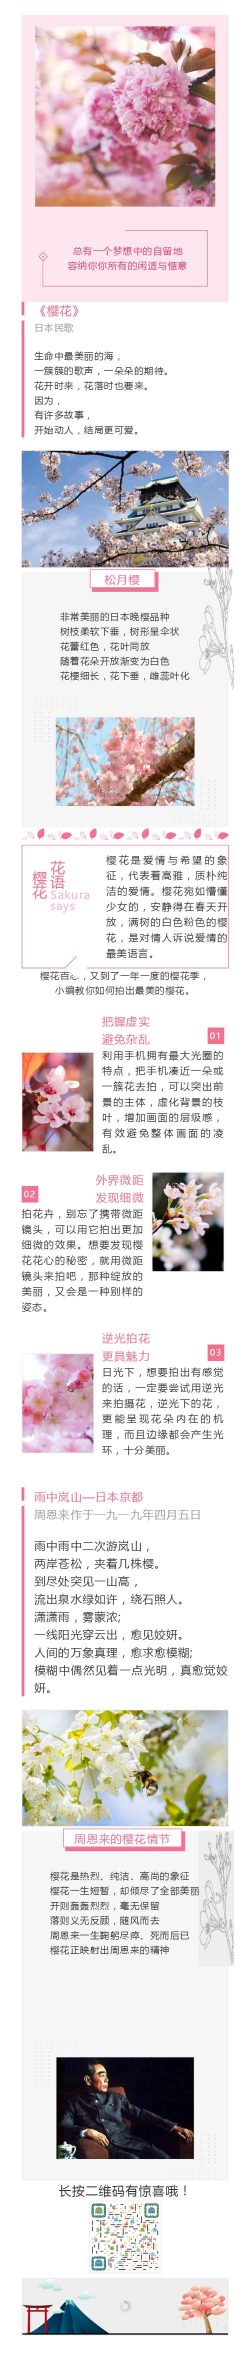 樱花日本民歌植物介绍百科 《樱花》